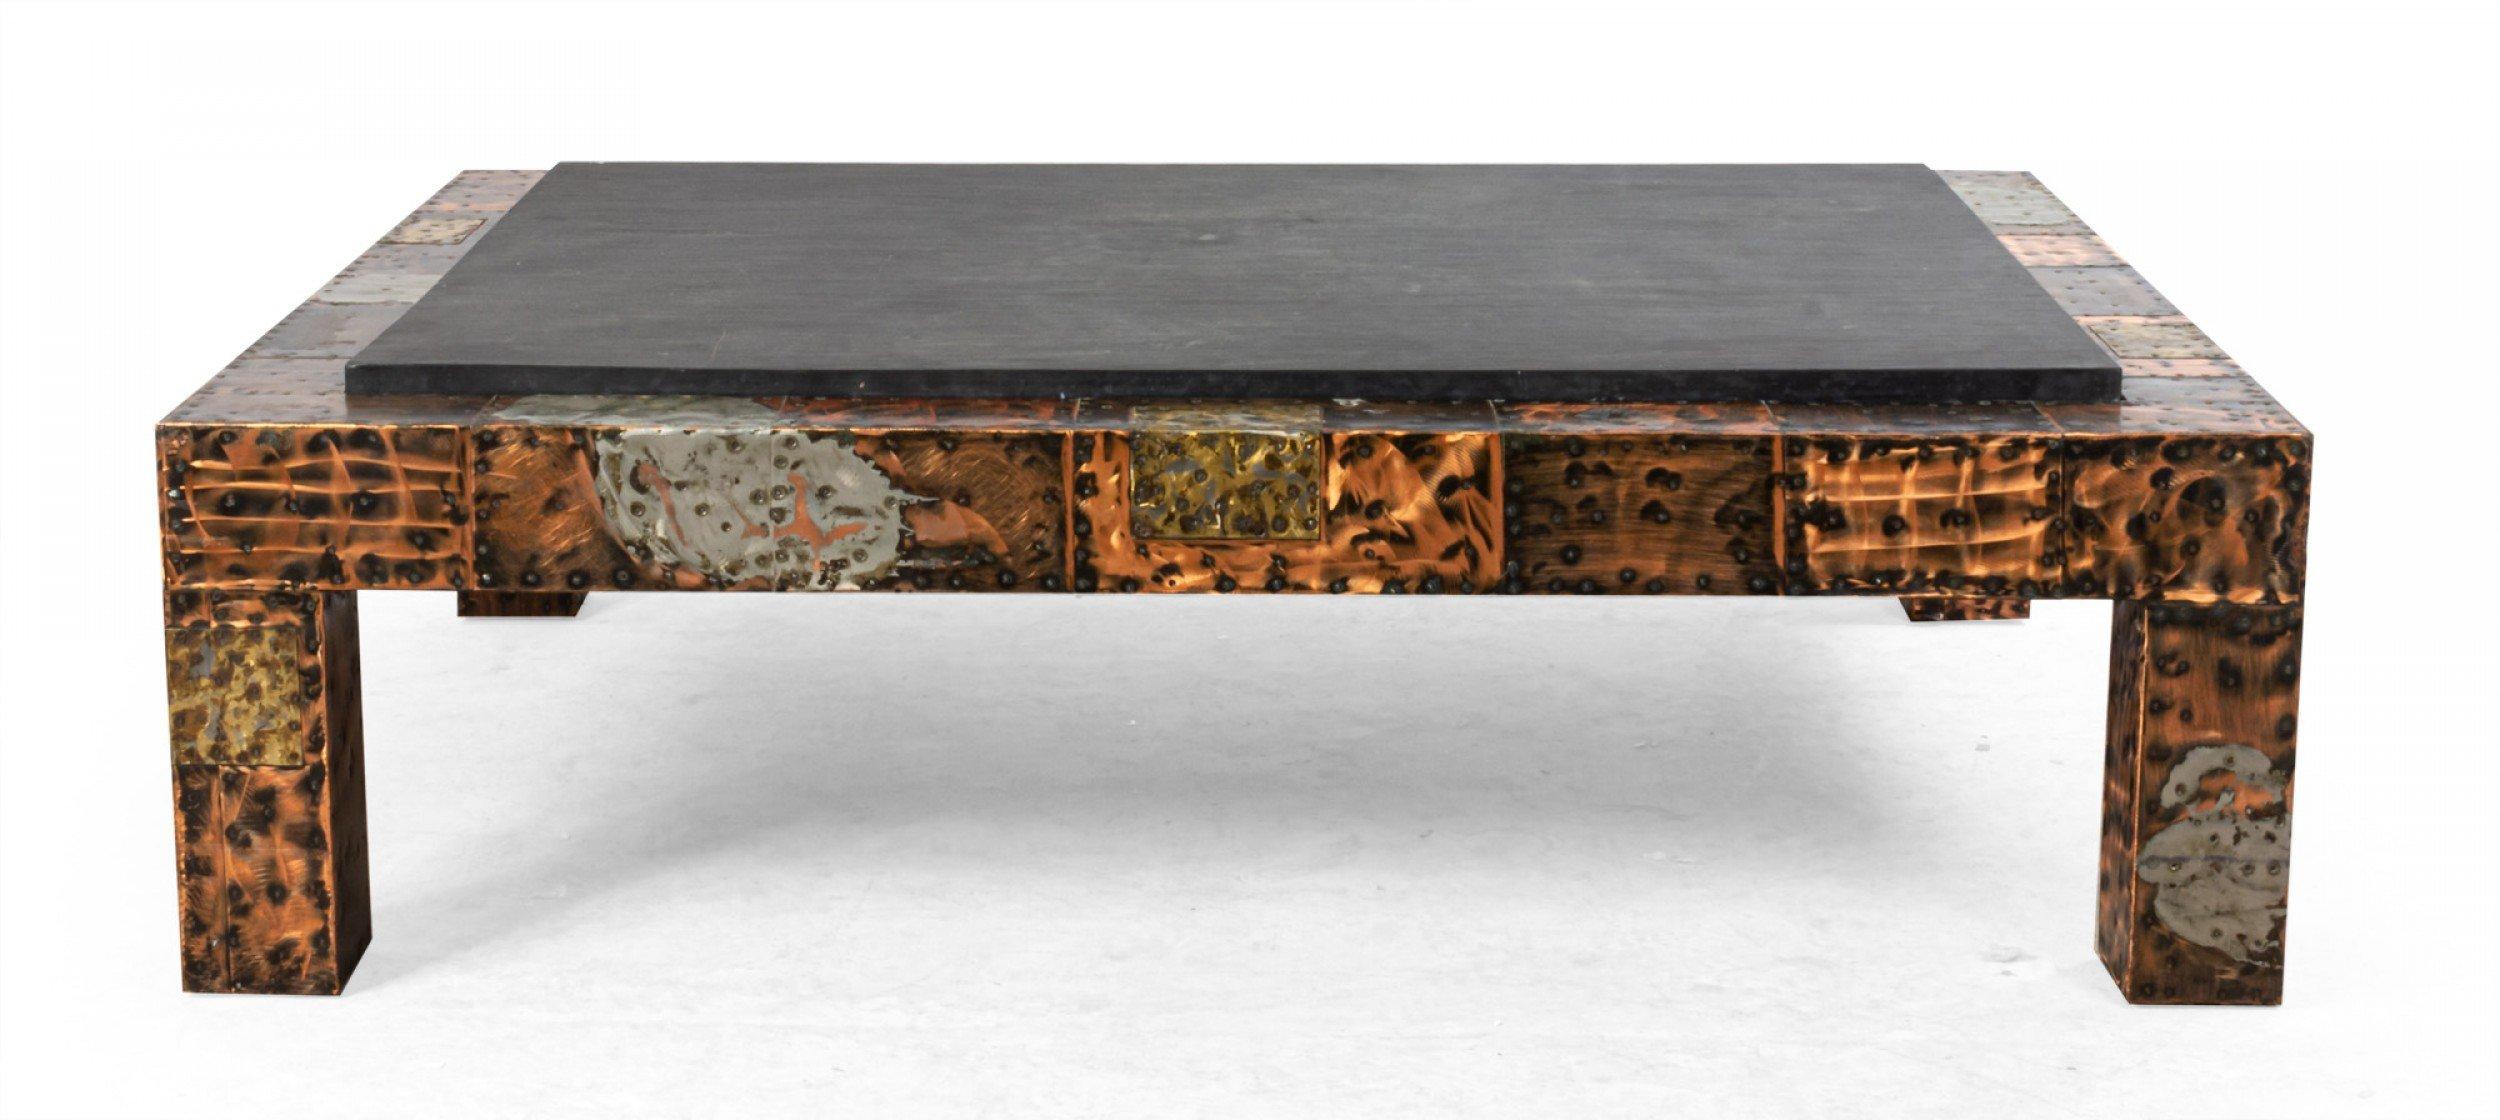 Table basse de style brutaliste du milieu du siècle dernier, avec plateau en ardoise et base en métal mélangé. (Attribué à PAUL EVANS).
     